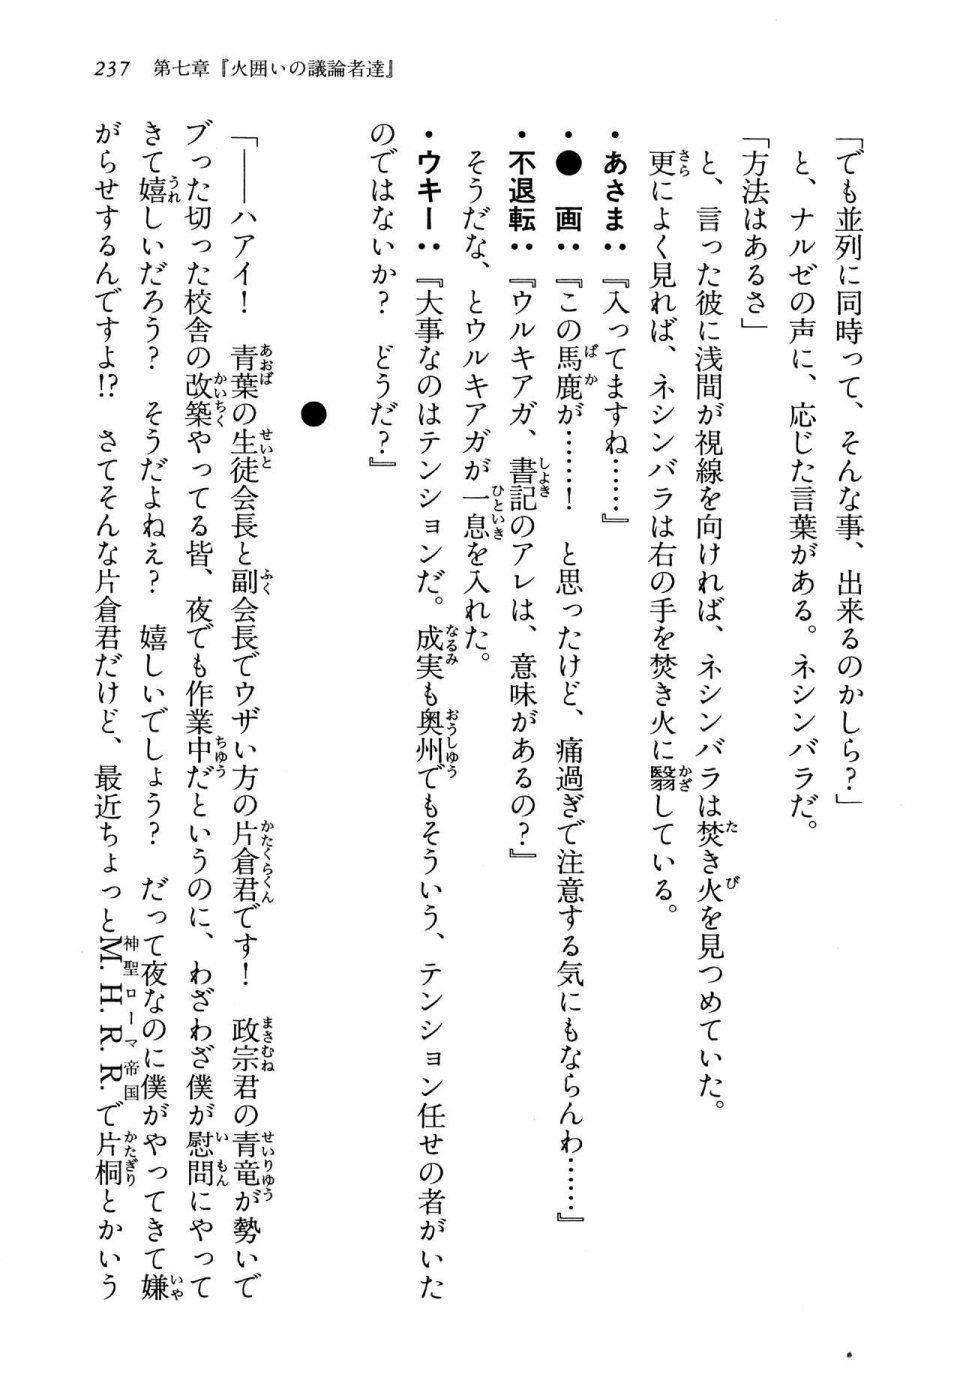 Kyoukai Senjou no Horizon LN Vol 13(6A) - Photo #237